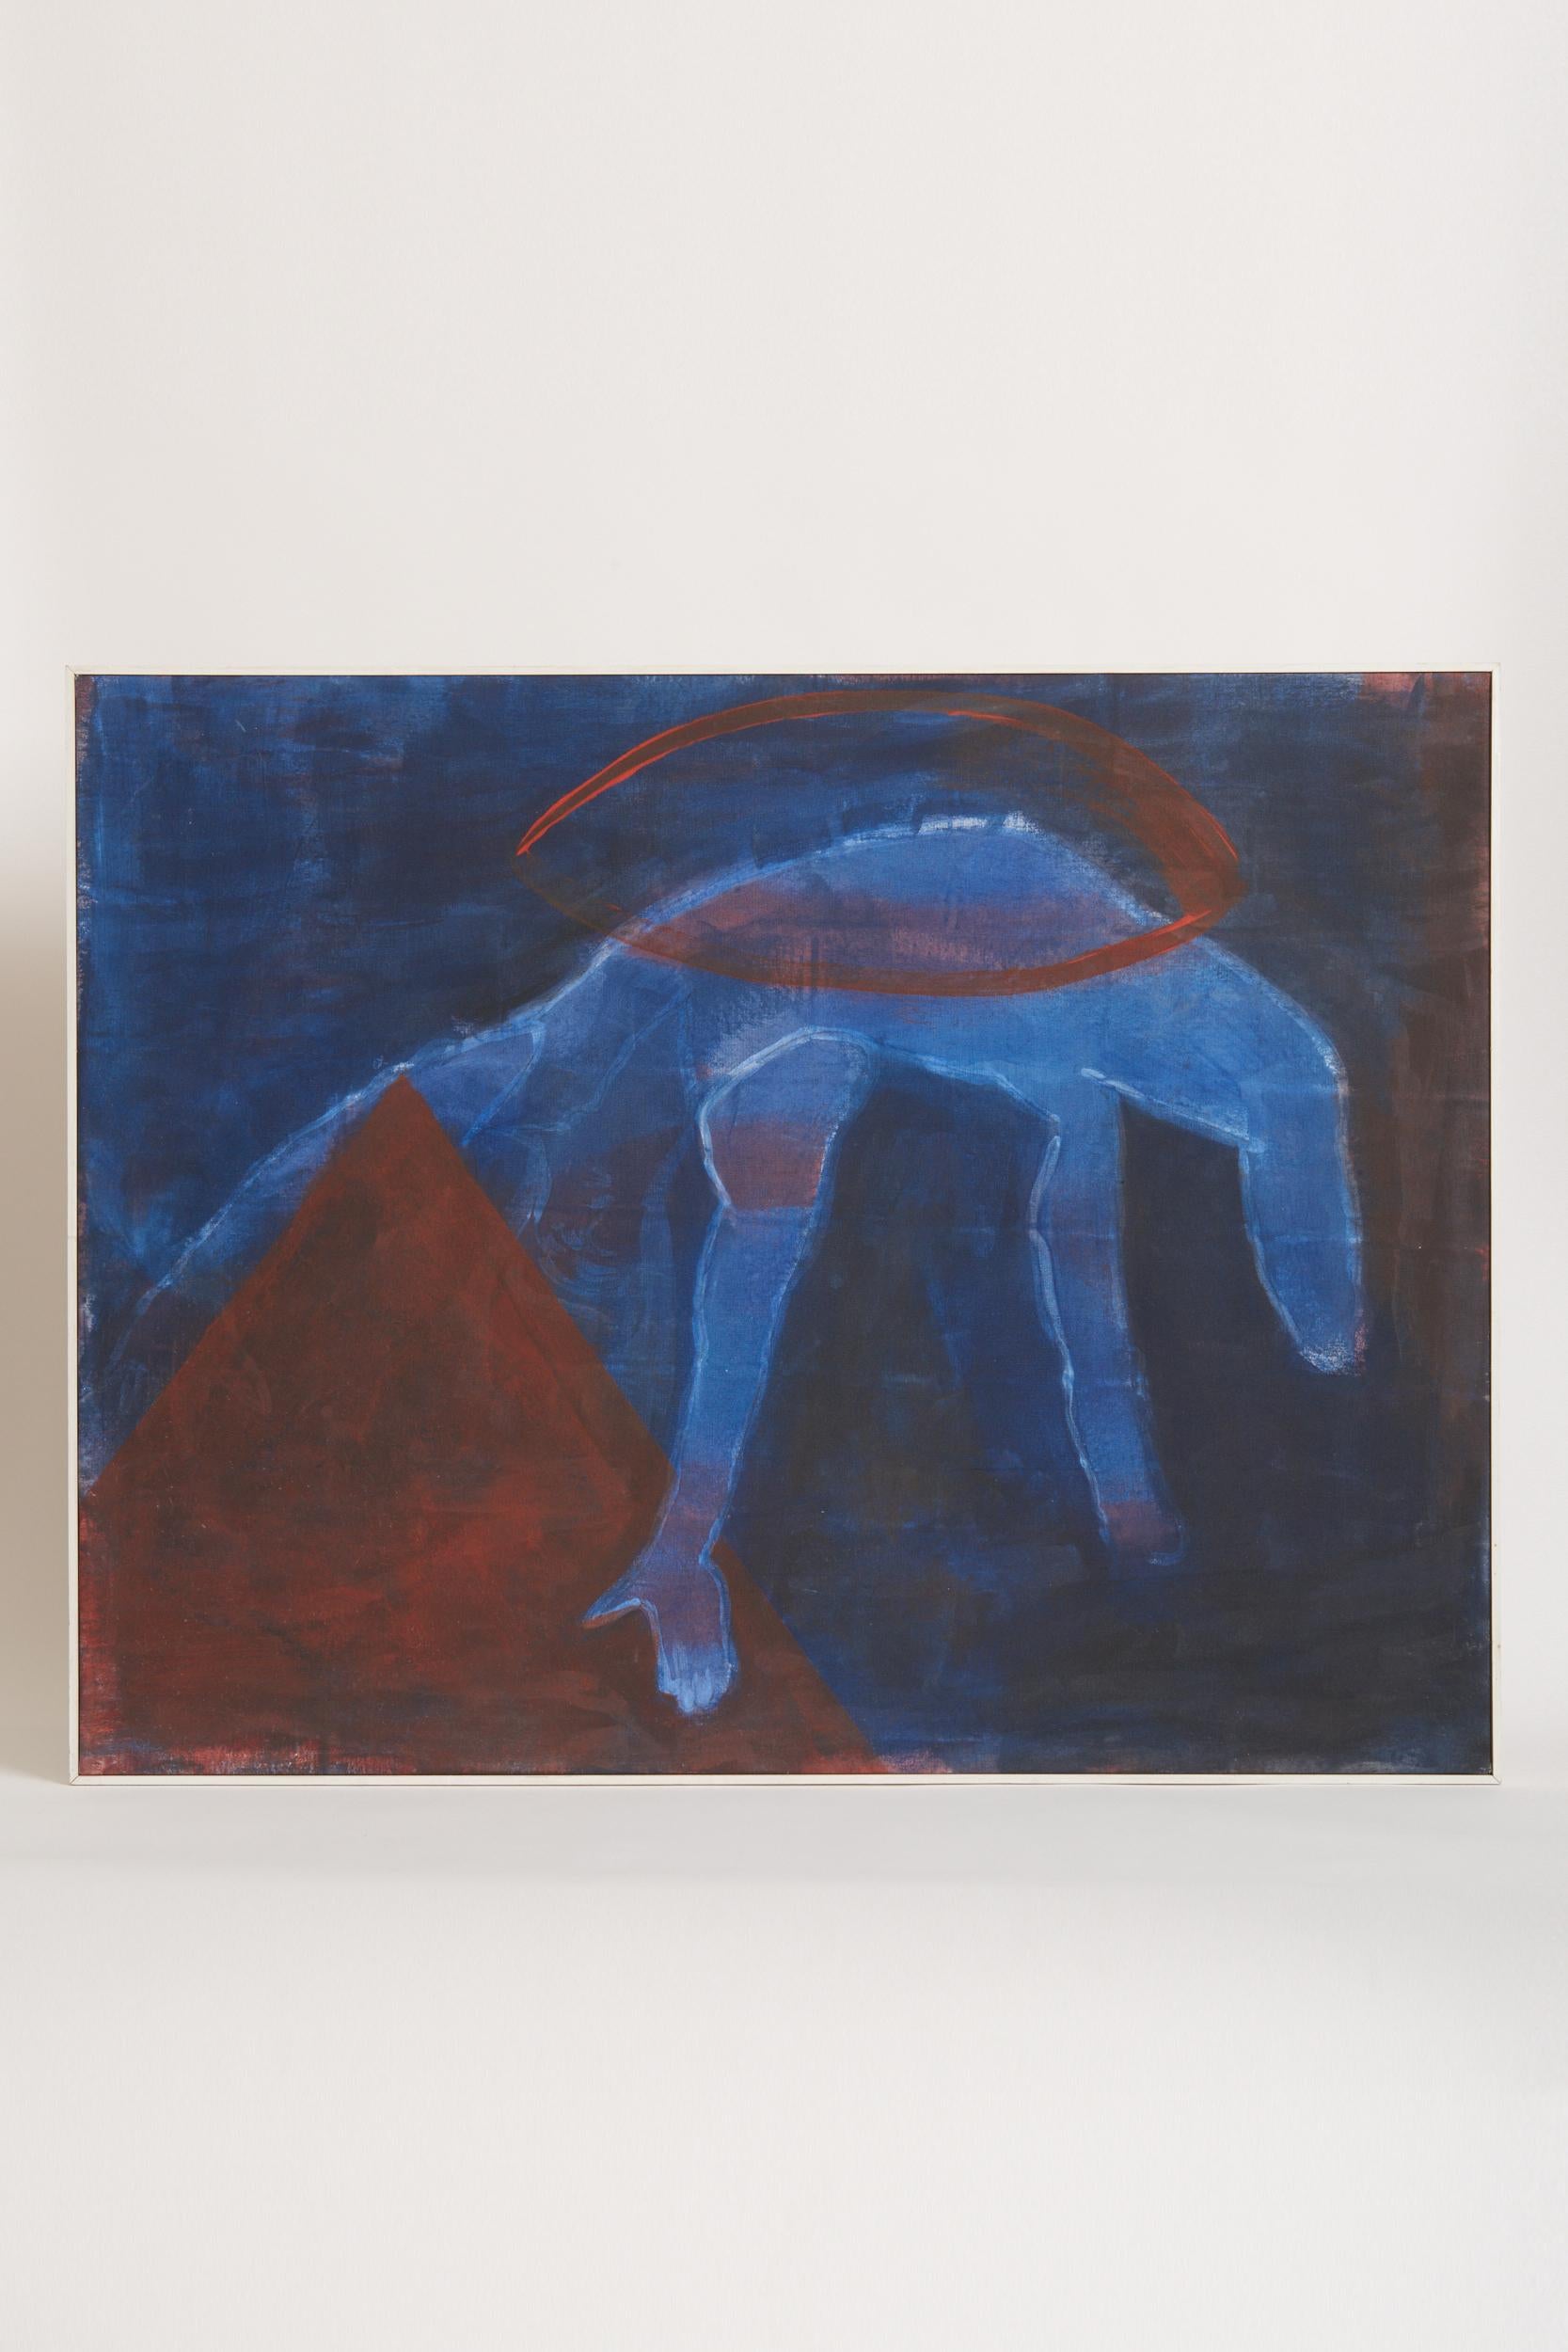 Ulrika Wagner (1953-1999).
Composition abstraite, peinture sur toile.
Danemark, 20e siècle
-
Ulrika Wagner a commencé sa carrière artistique par un diplôme en arts textiles et artisanat au Danemark. Ensuite, elle a poursuivi avec les techniques de